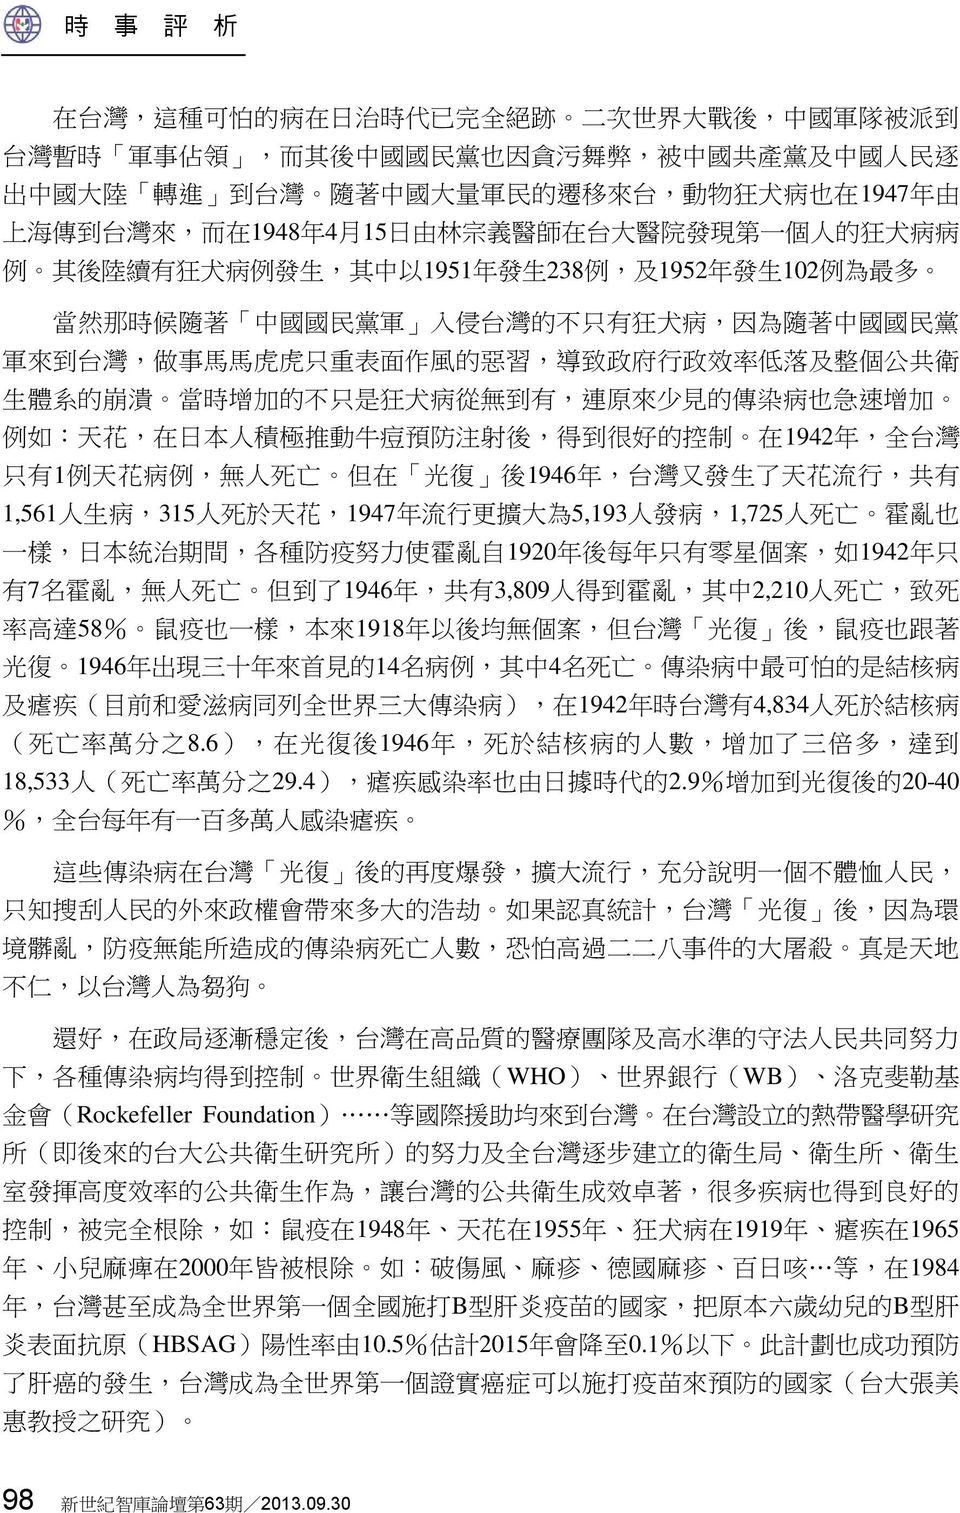 只 有 狂 犬 病, 因 為 隨 著 中 國 國 民 黨 軍 來 到 台 灣, 做 事 馬 馬 虎 虎 只 重 表 面 作 風 的 惡 習, 導 致 政 府 行 政 效 率 低 落 及 整 個 公 共 衛 生 體 系 的 崩 潰 當 時 增 加 的 不 只 是 狂 犬 病 從 無 到 有, 連 原 來 少 見 的 傳 染 病 也 急 速 增 加 例 如 : 天 花, 在 日 本 人 積 極 推